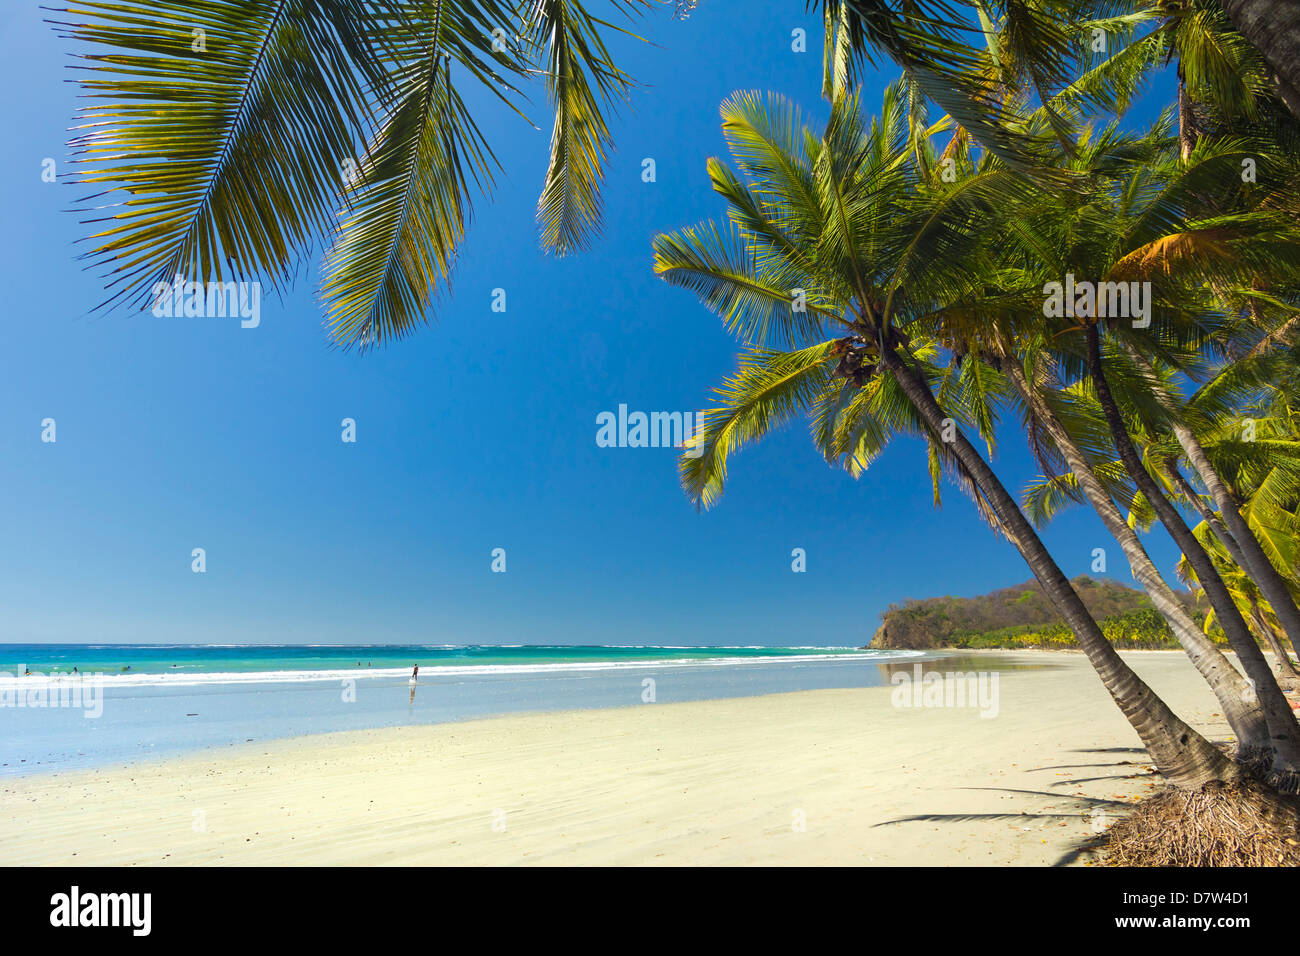 Le sable blanc de la plage bordée de palmiers, à ce village & resort, Samara, Province de Guanacaste, Péninsule de Nicoya, Costa Rica Banque D'Images